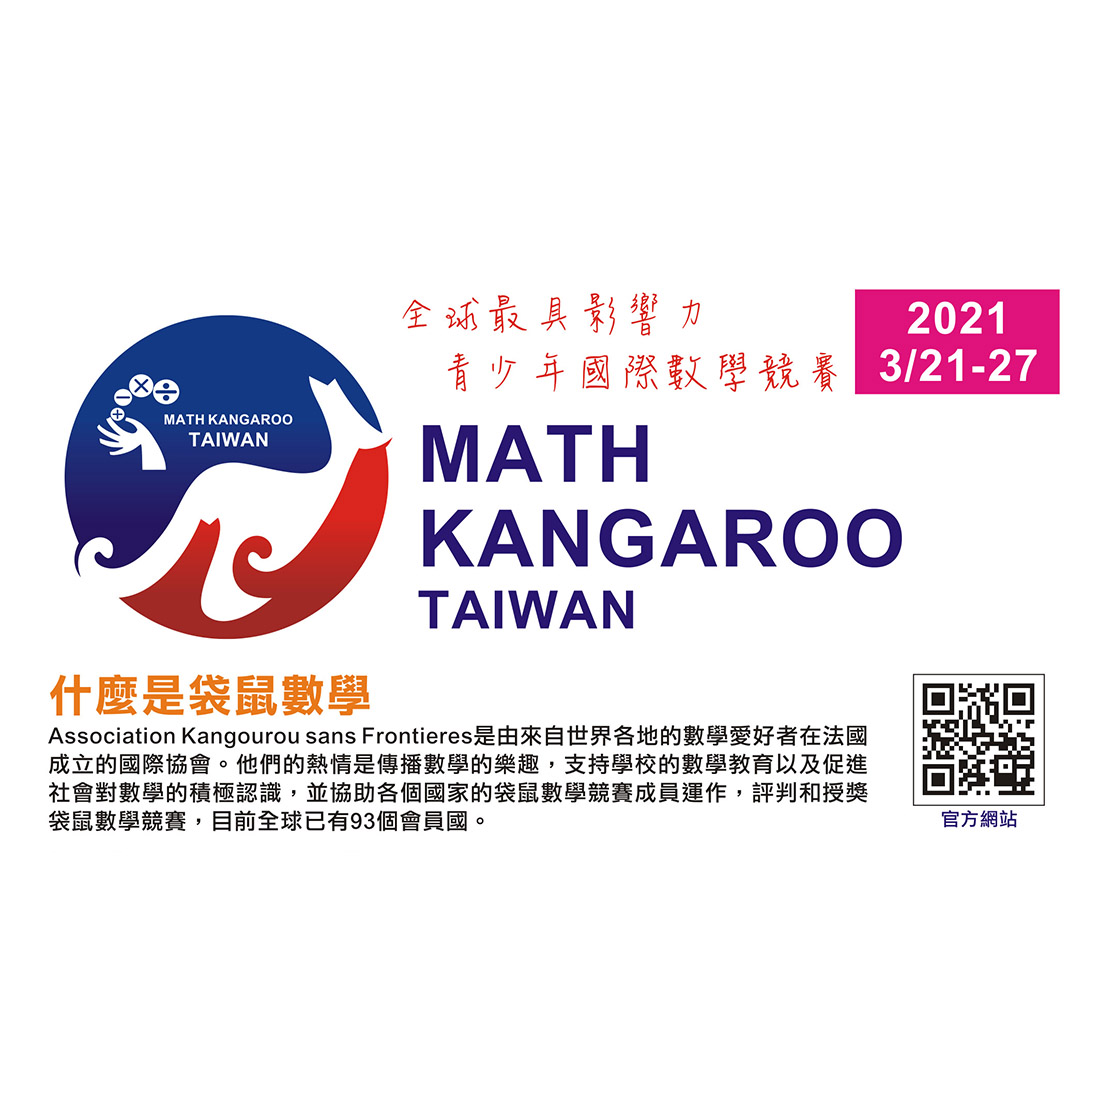 21 Math Kangaroo Taiwan 袋鼠數學競賽 點子秀